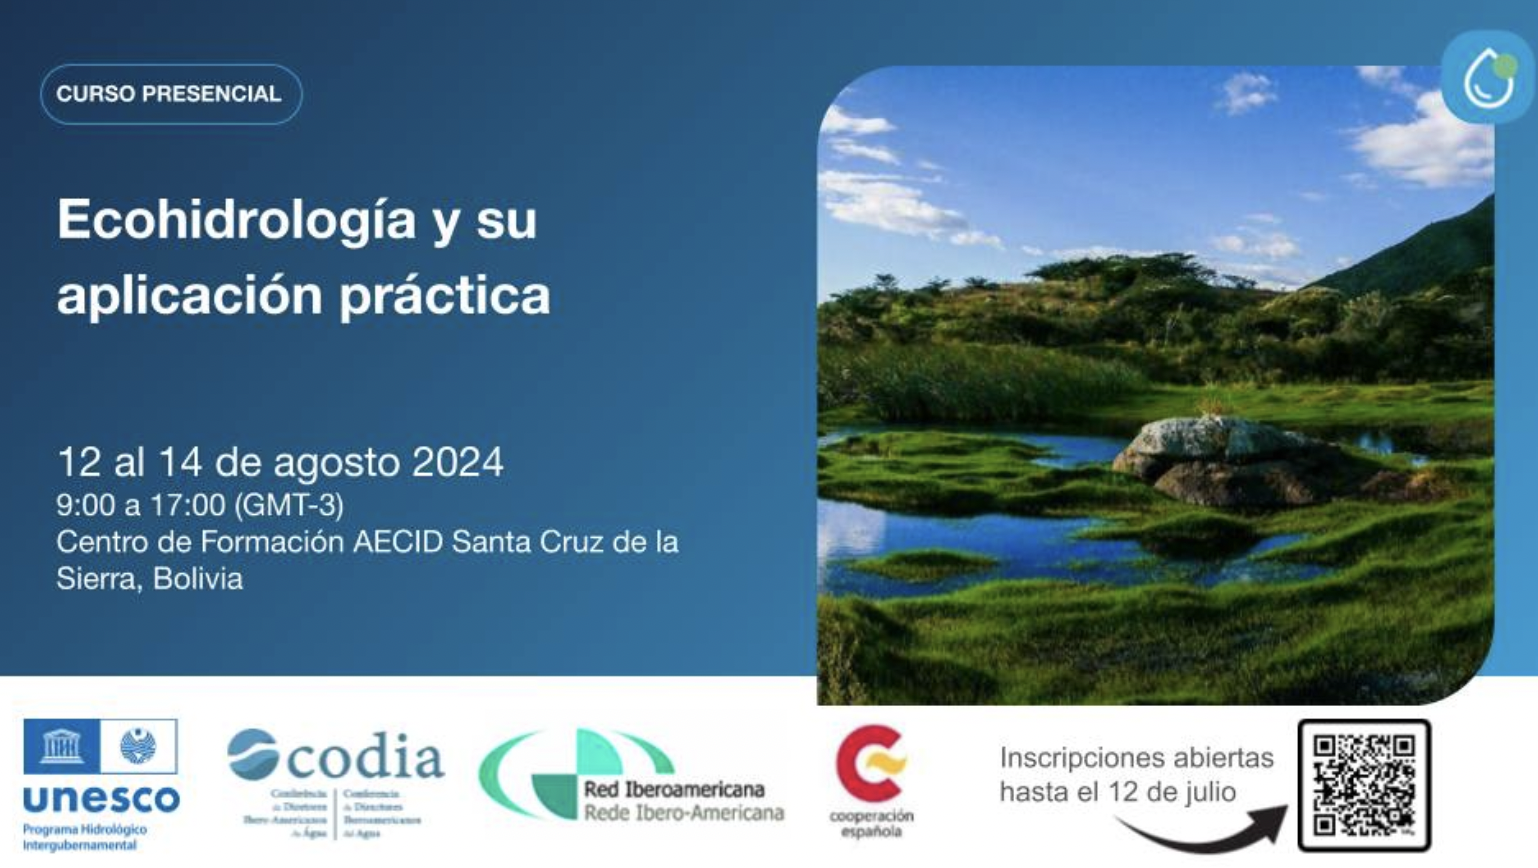 Ecohidrología y su aplicación práctica (AECID)